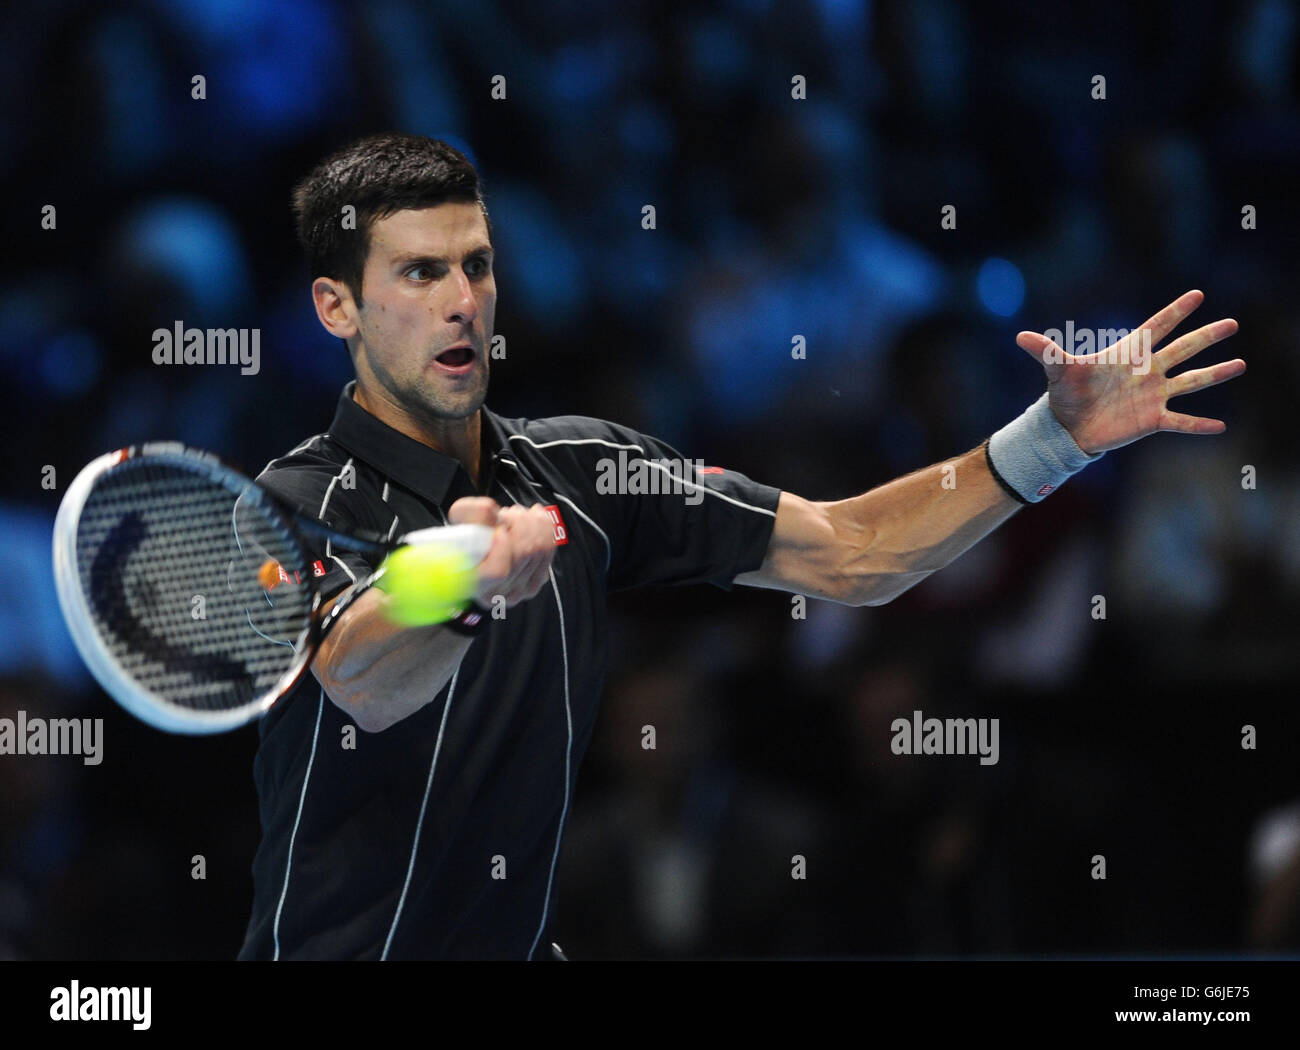 Novak Djokovic en Serbie en action contre Rafael Nadal en Espagne pendant le huitième jour des finales du Barclays ATP World Tour à l'O2 Arena, Londres. APPUYEZ SUR ASSOCIATION photo. Date de la photo: Lundi 11 novembre 2013. Voir PA Story TENNIS Londres. Le crédit photo devrait se lire comme suit : Adam Davy/PA Wire Banque D'Images